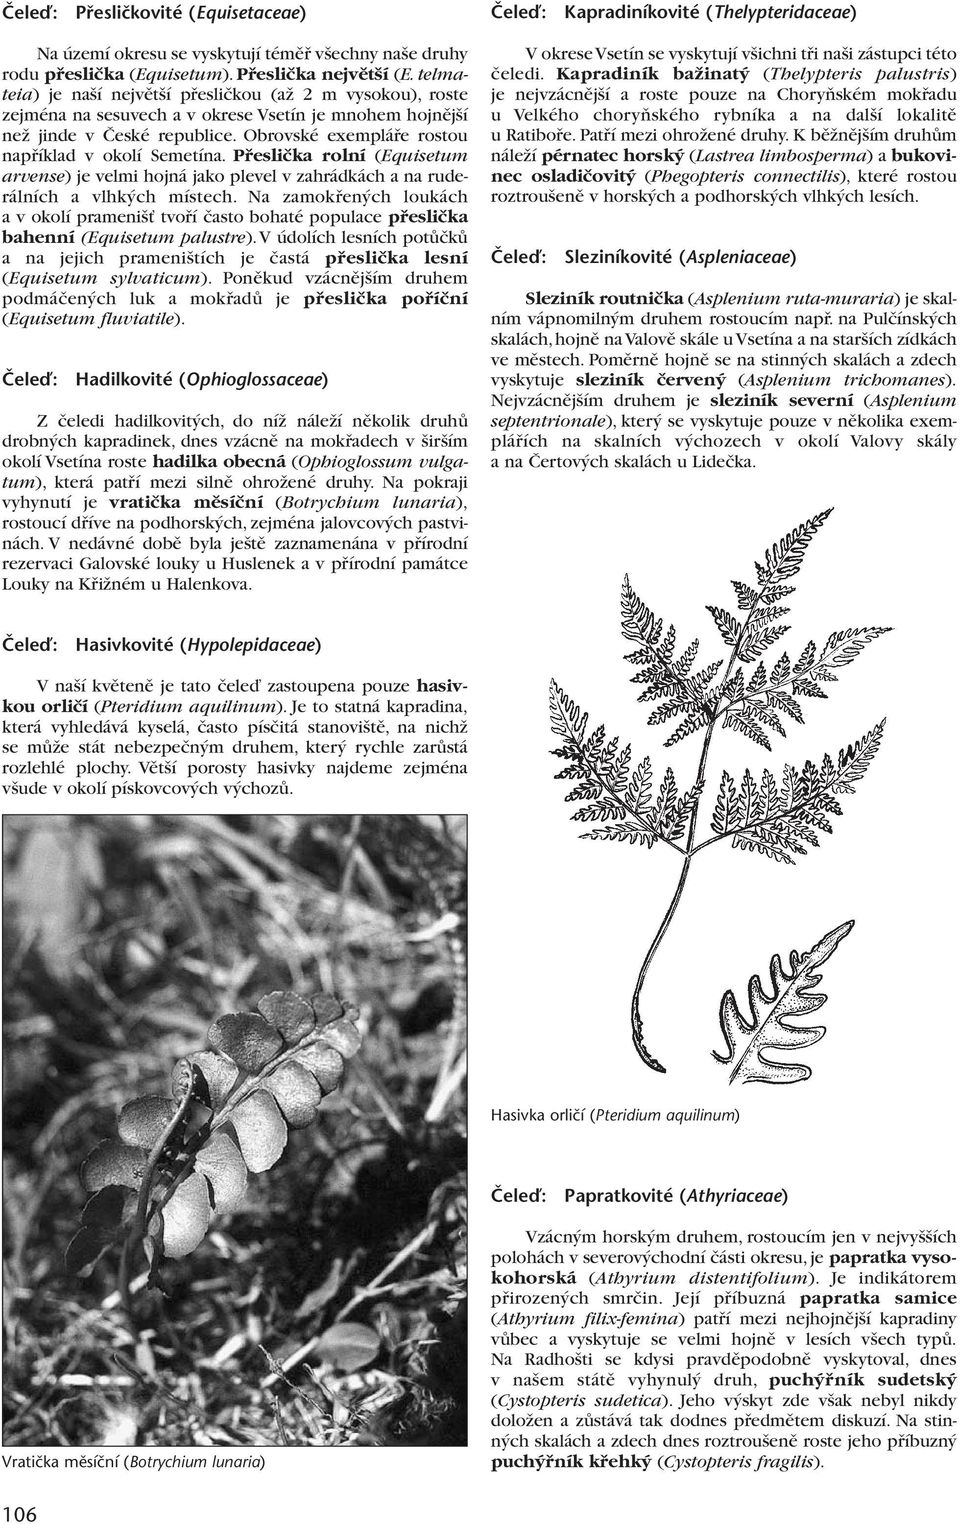 Obrovské exempláfie rostou napfiíklad v okolí Semetína. Pfiesliãka rolní (Equisetum arvense) je velmi hojná jako plevel v zahrádkách a na ruderálních a vlhk ch místech.